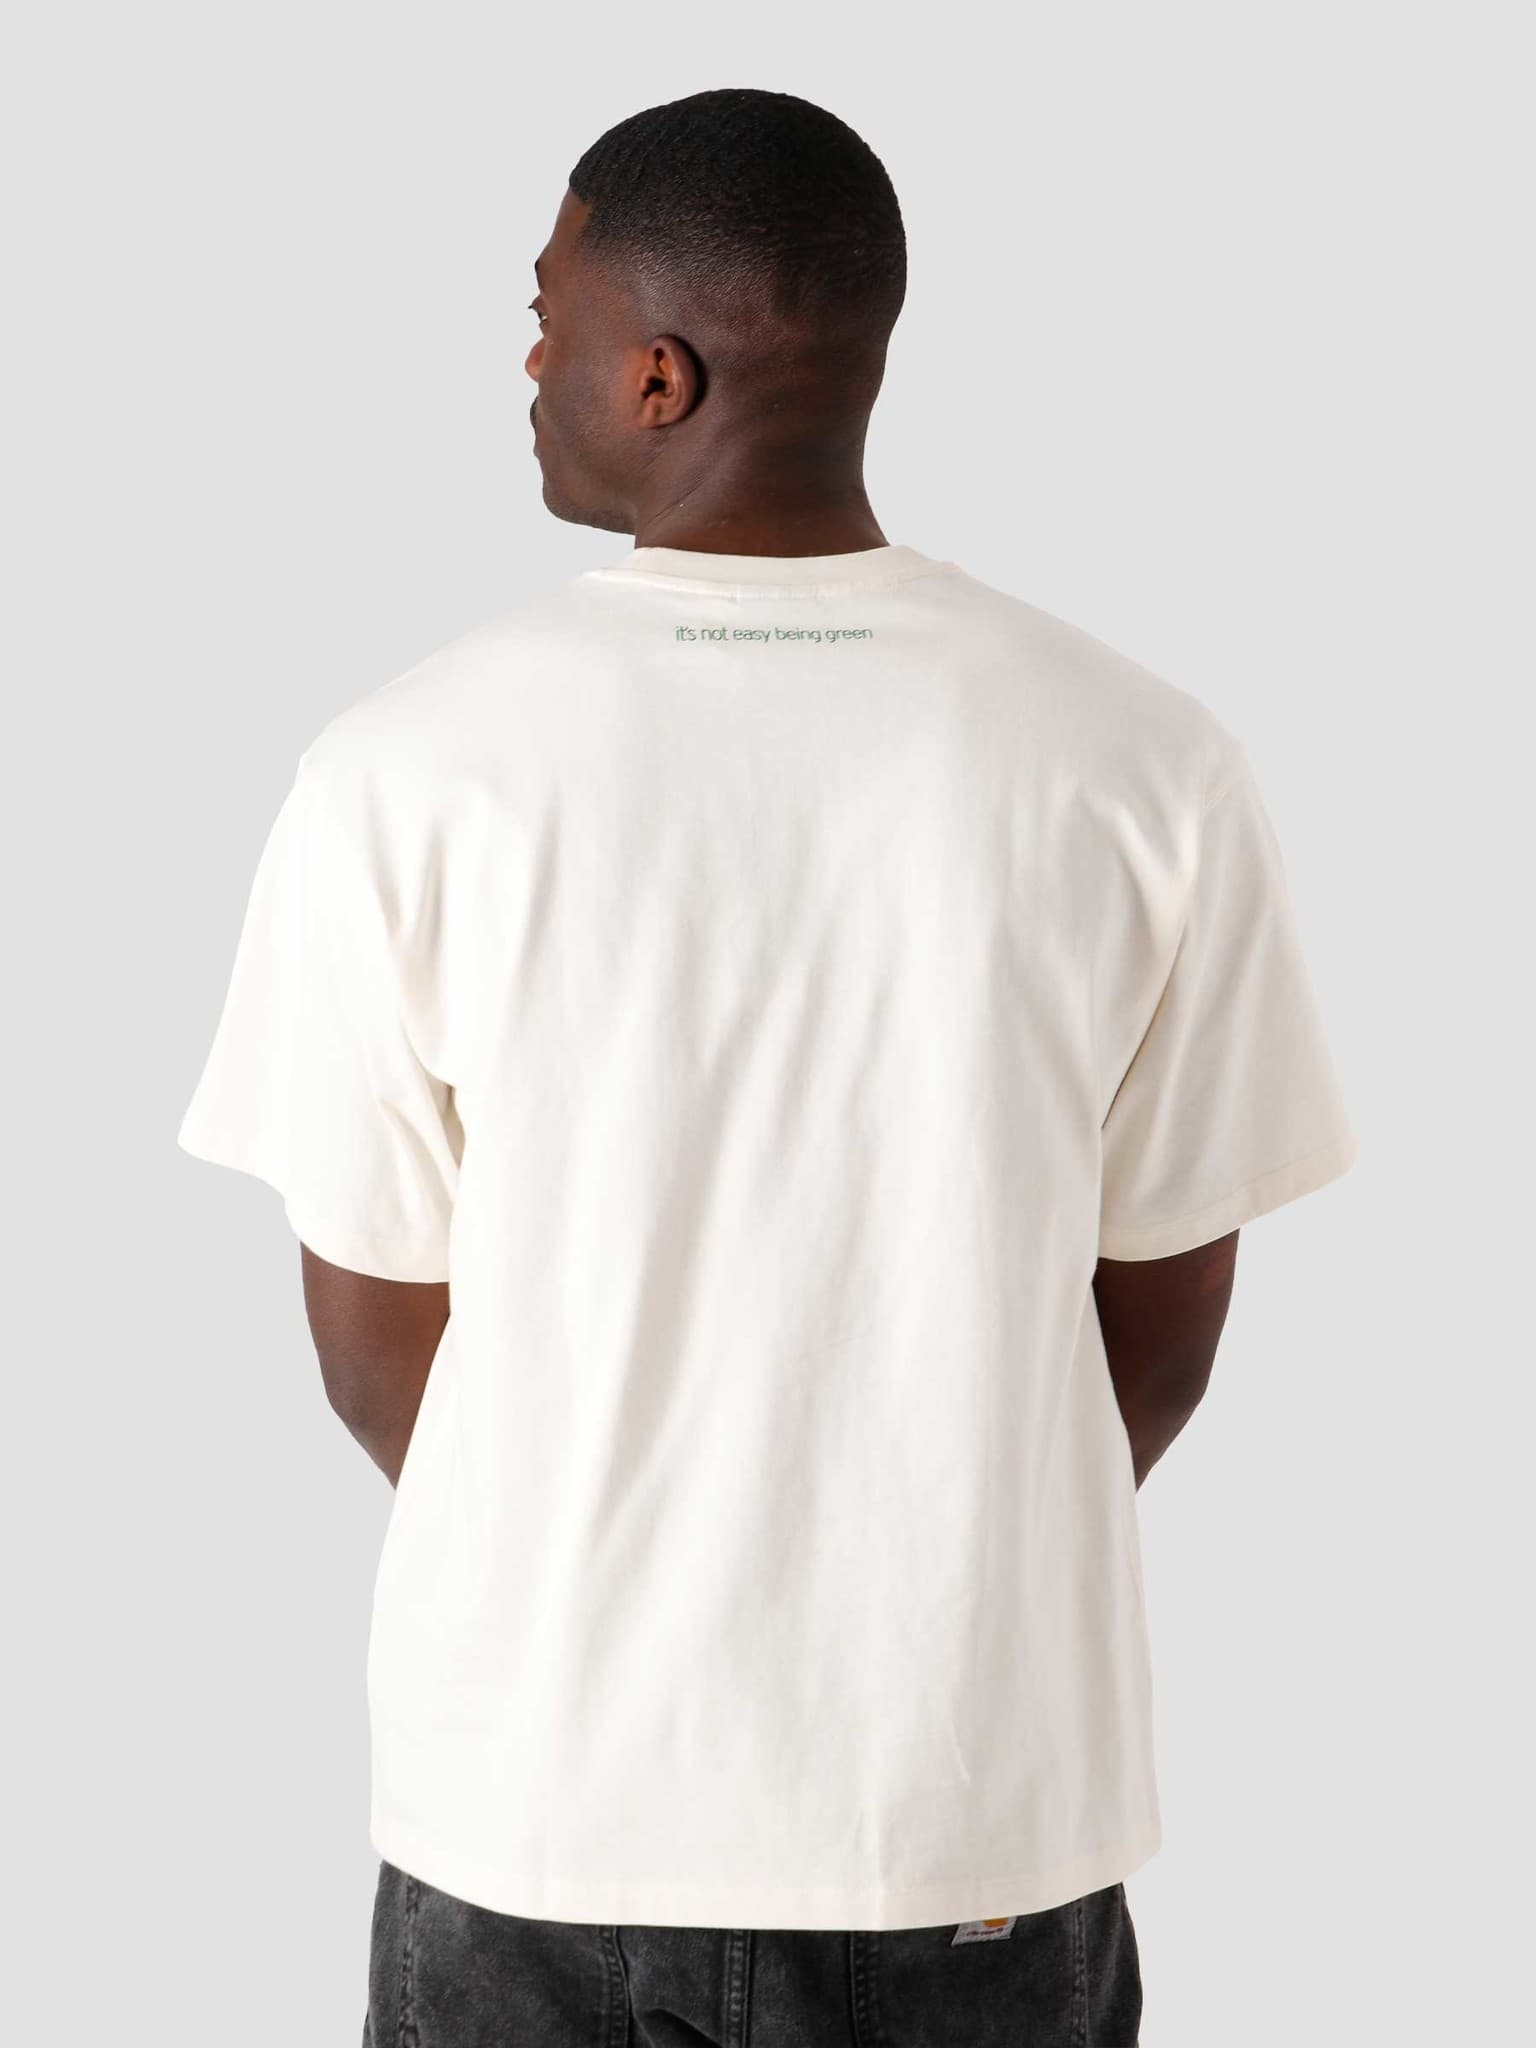 Kermit T-Shirt Non Dye GQ4152